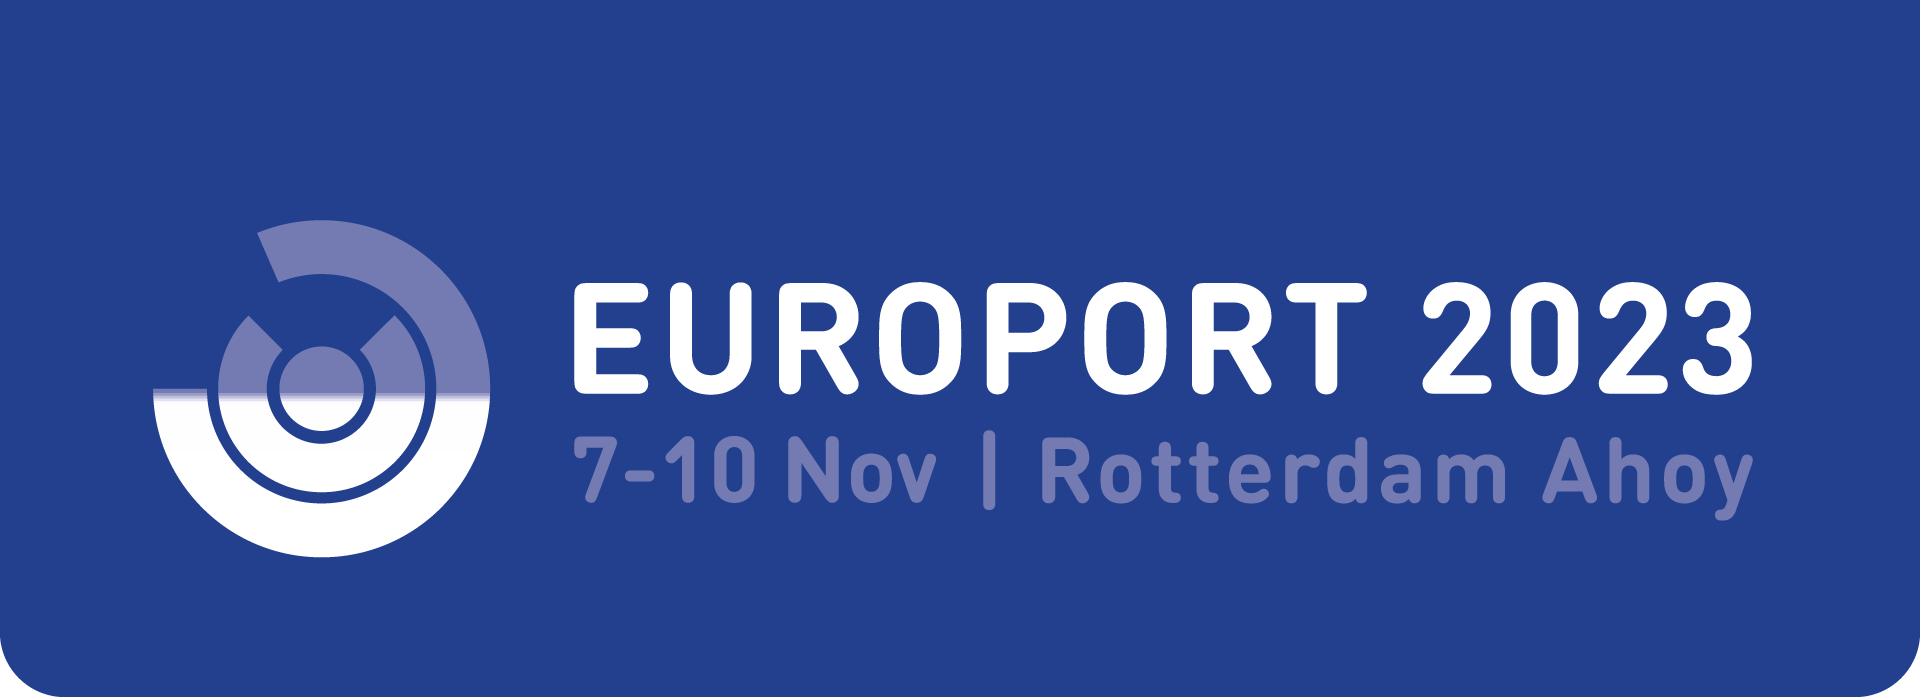 europort-logo-2023